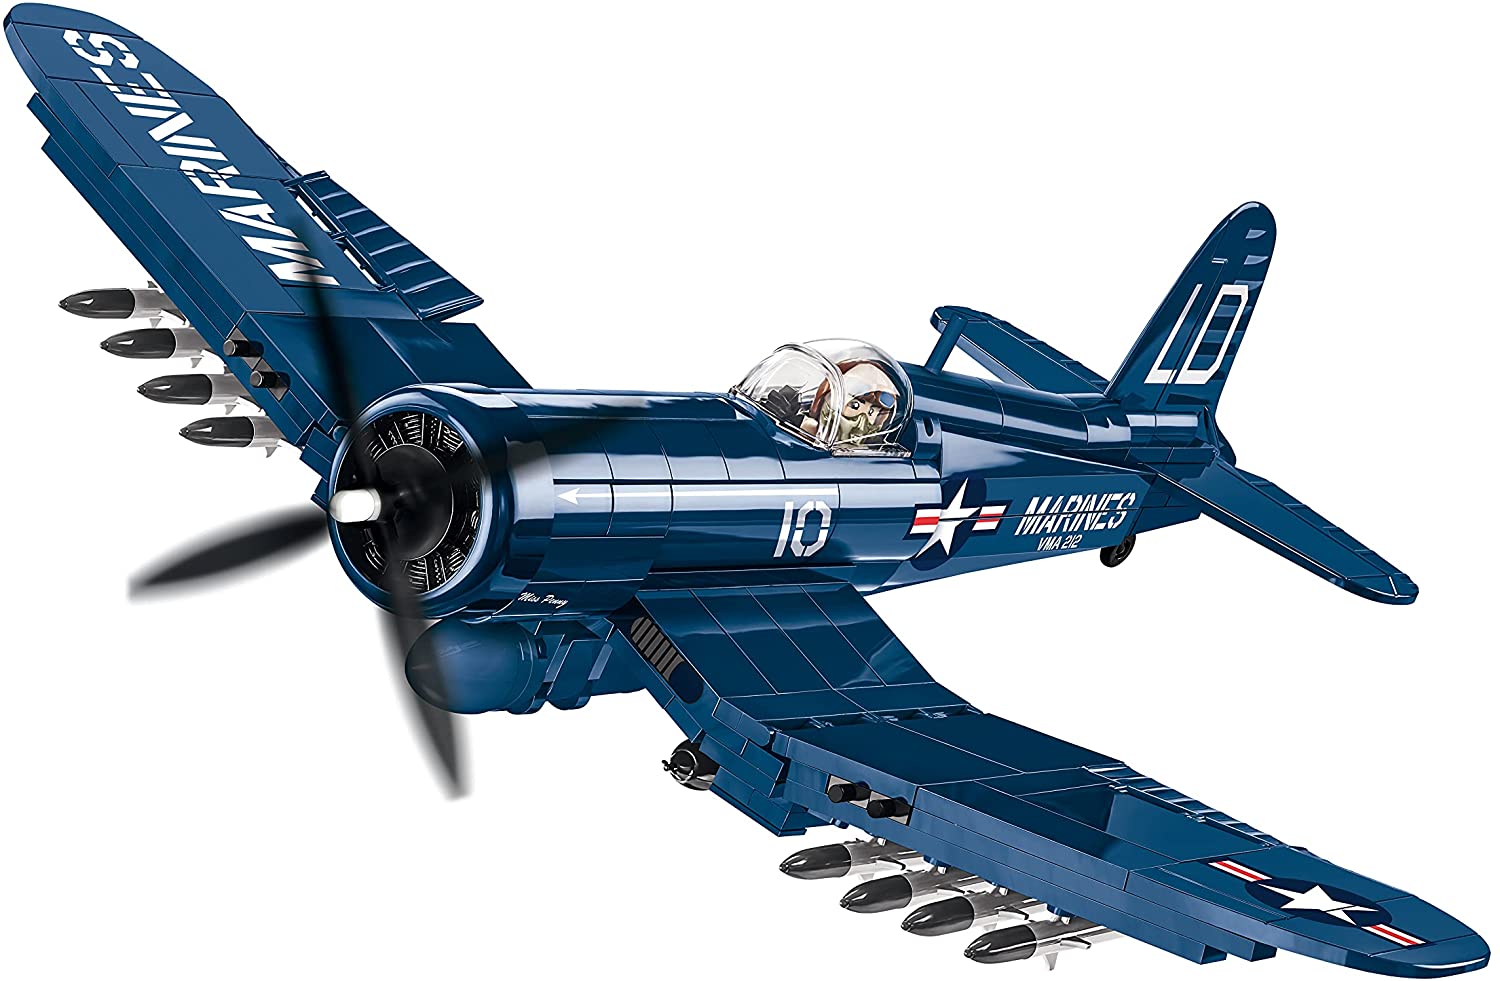 COBI Historical Collection AU-1 Corsair American Fighter Plane, Blue - sctoyswholesale